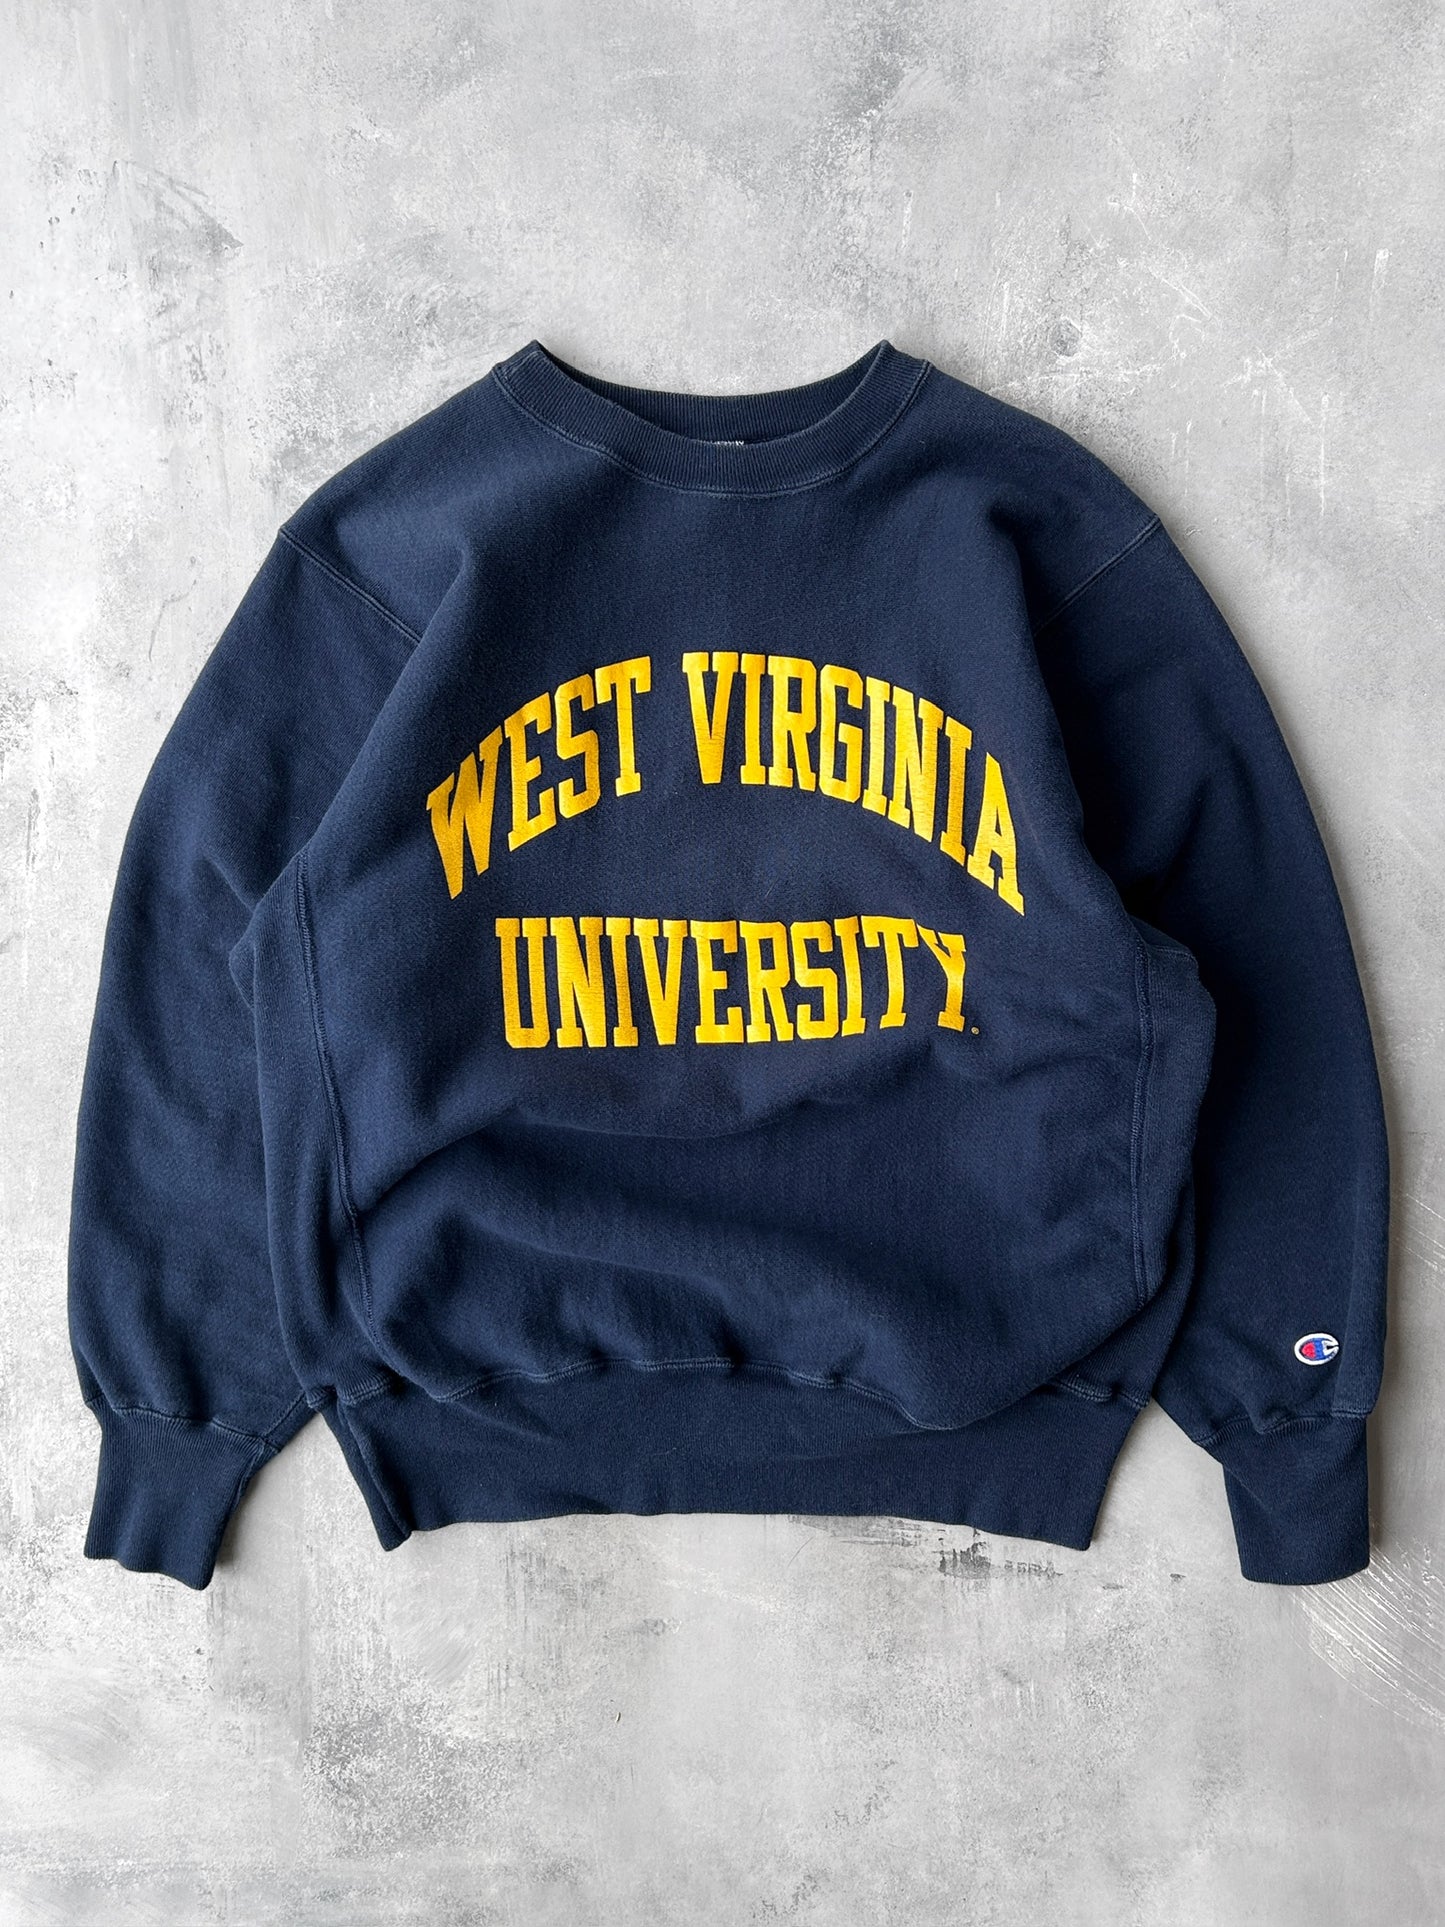 West Virginia University Sweatshirt 90's - XL